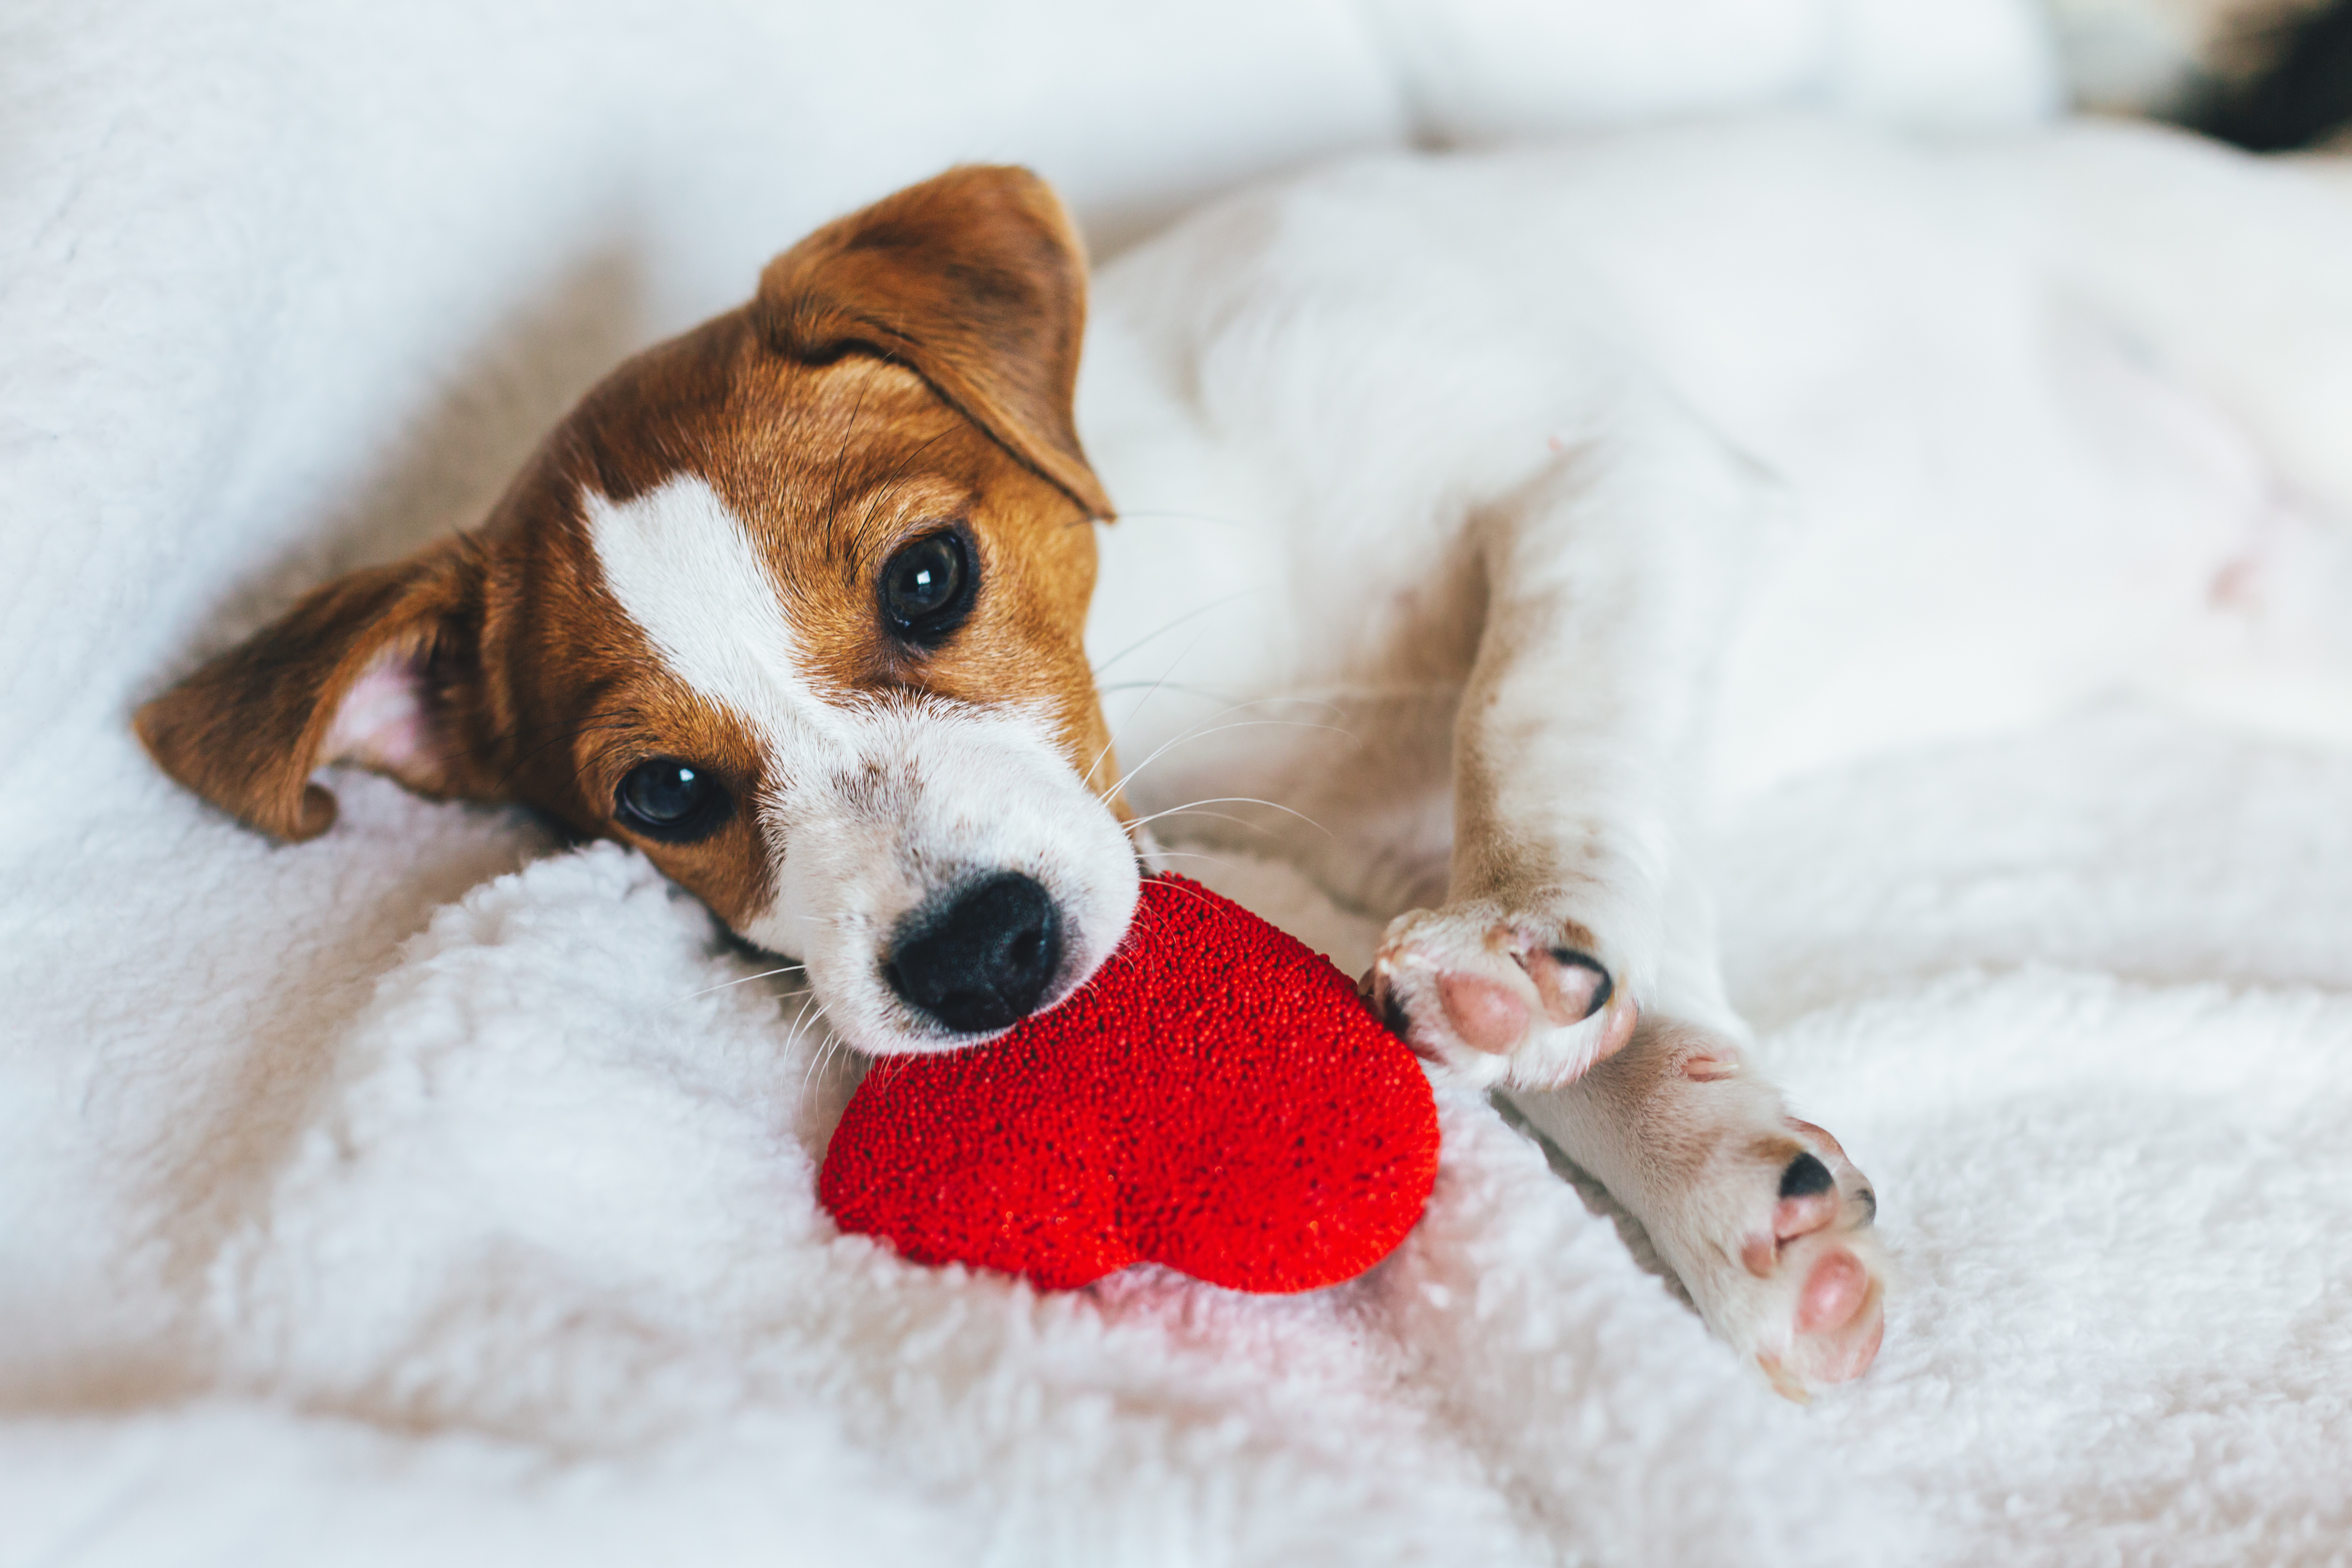 Heart Murmurs in Dogs